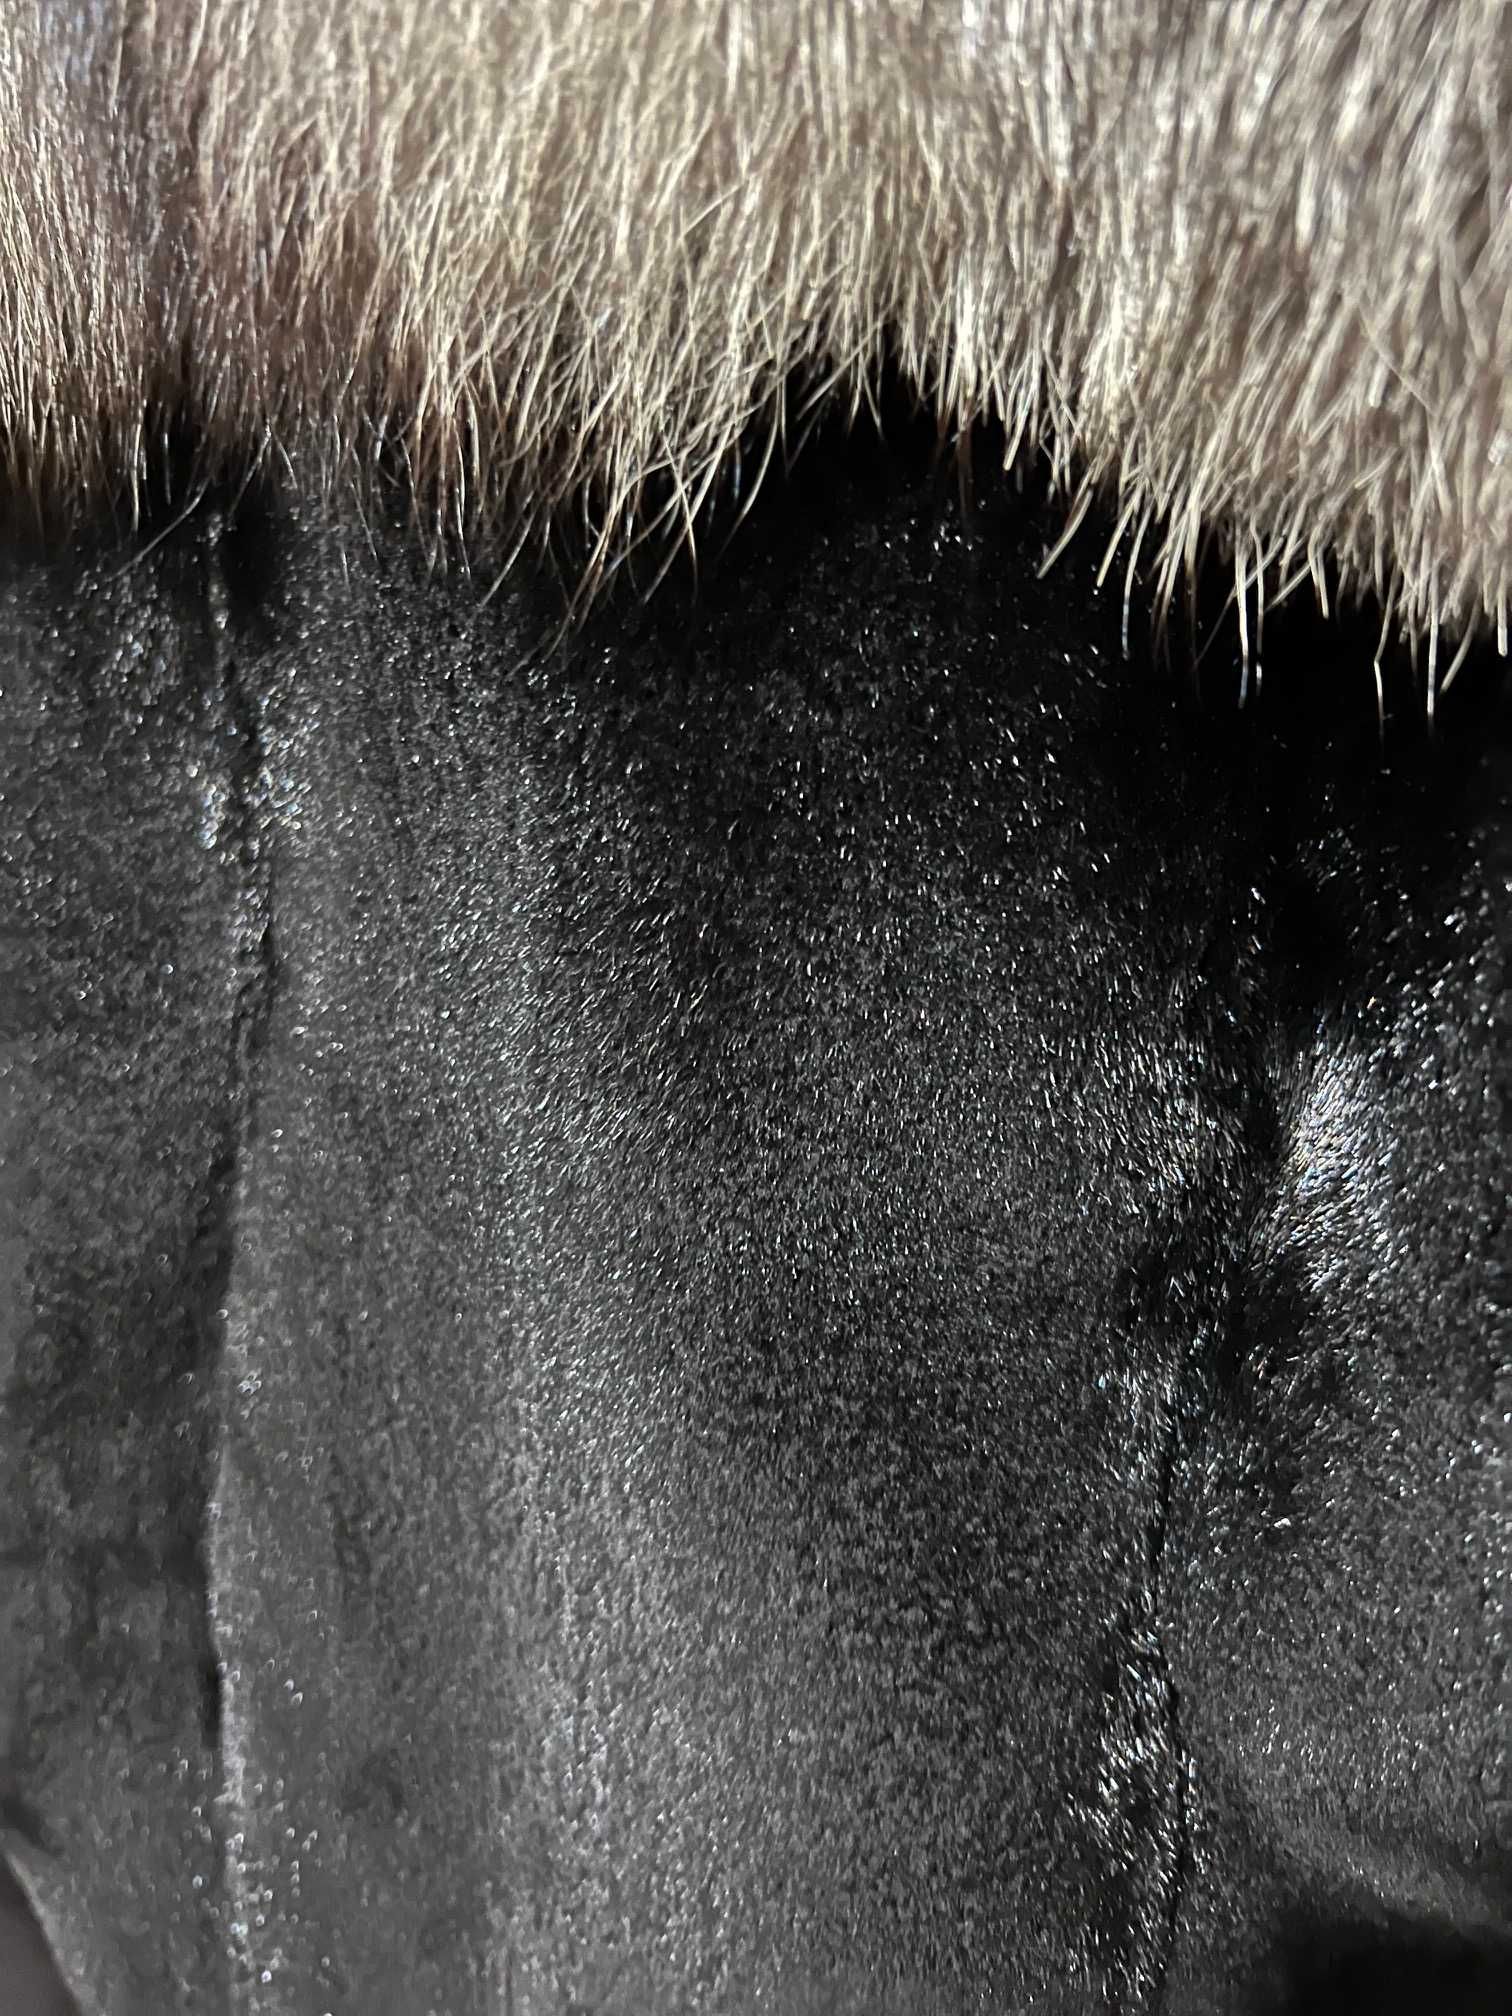 Дамска шуба черна оскубана норка с полярна лисица. Размер 44-48